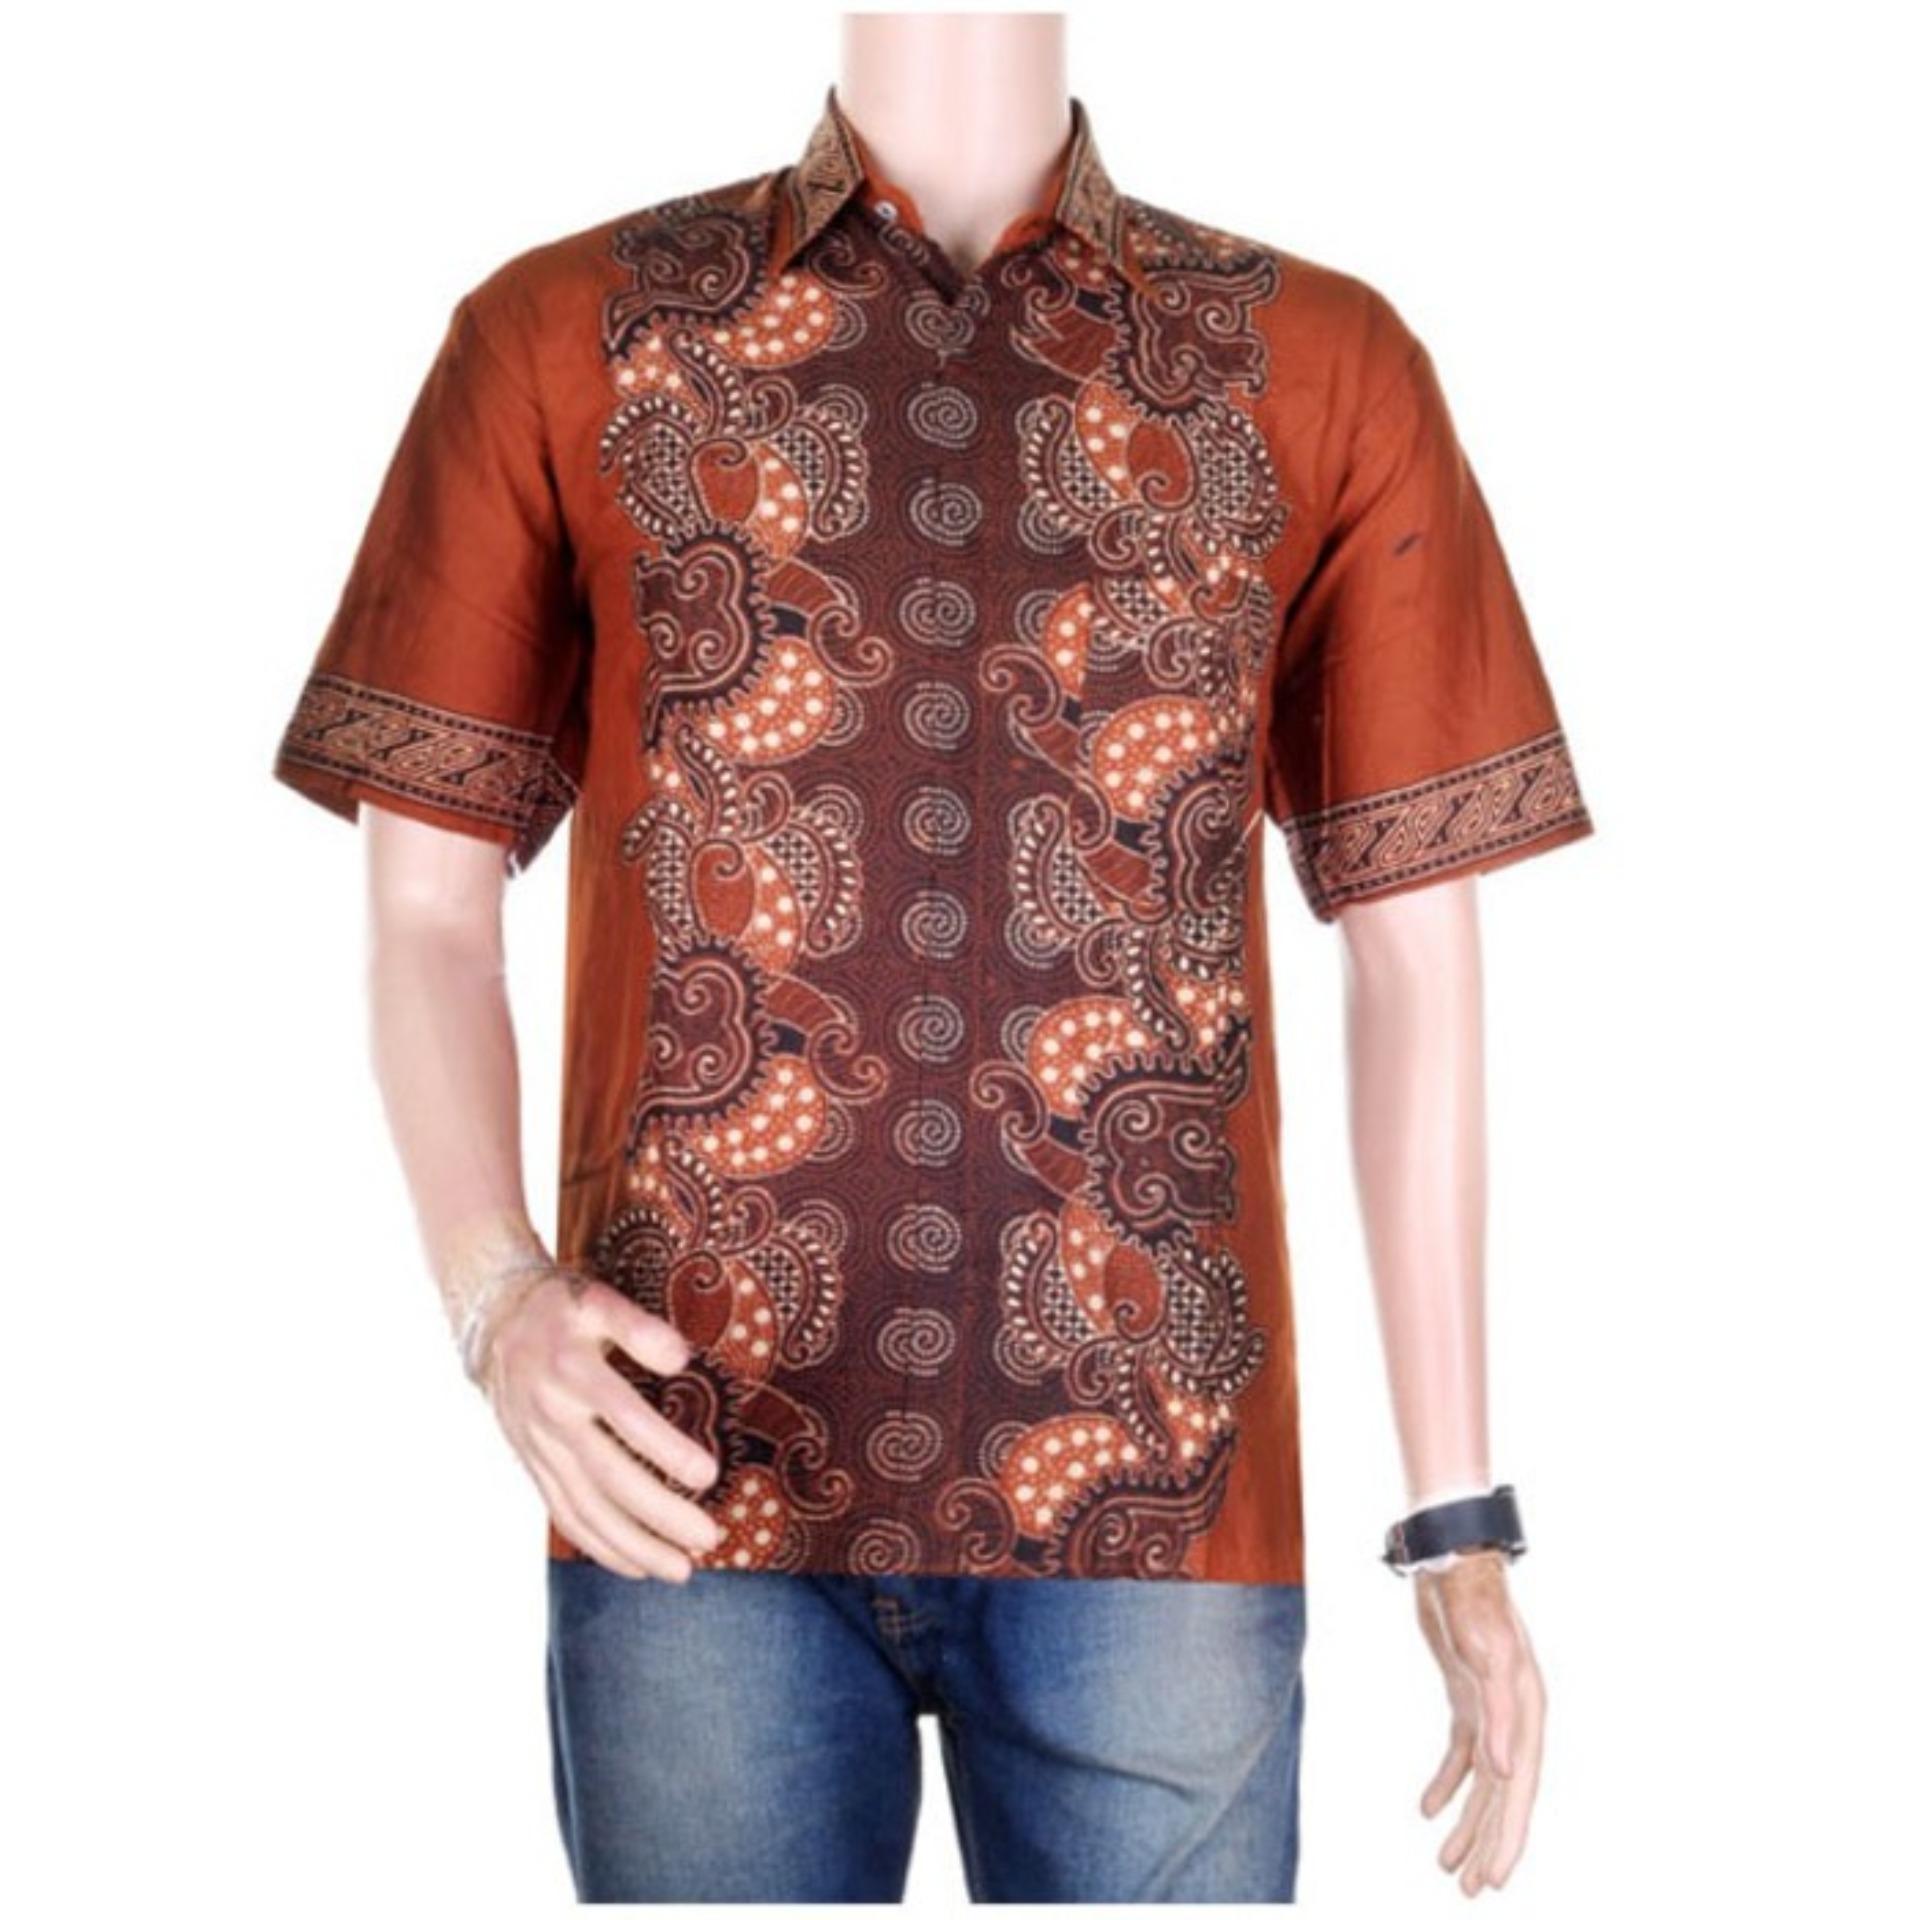  Baju Batik Pria Eksklusif Kemeja Lengan Pendek Modern 